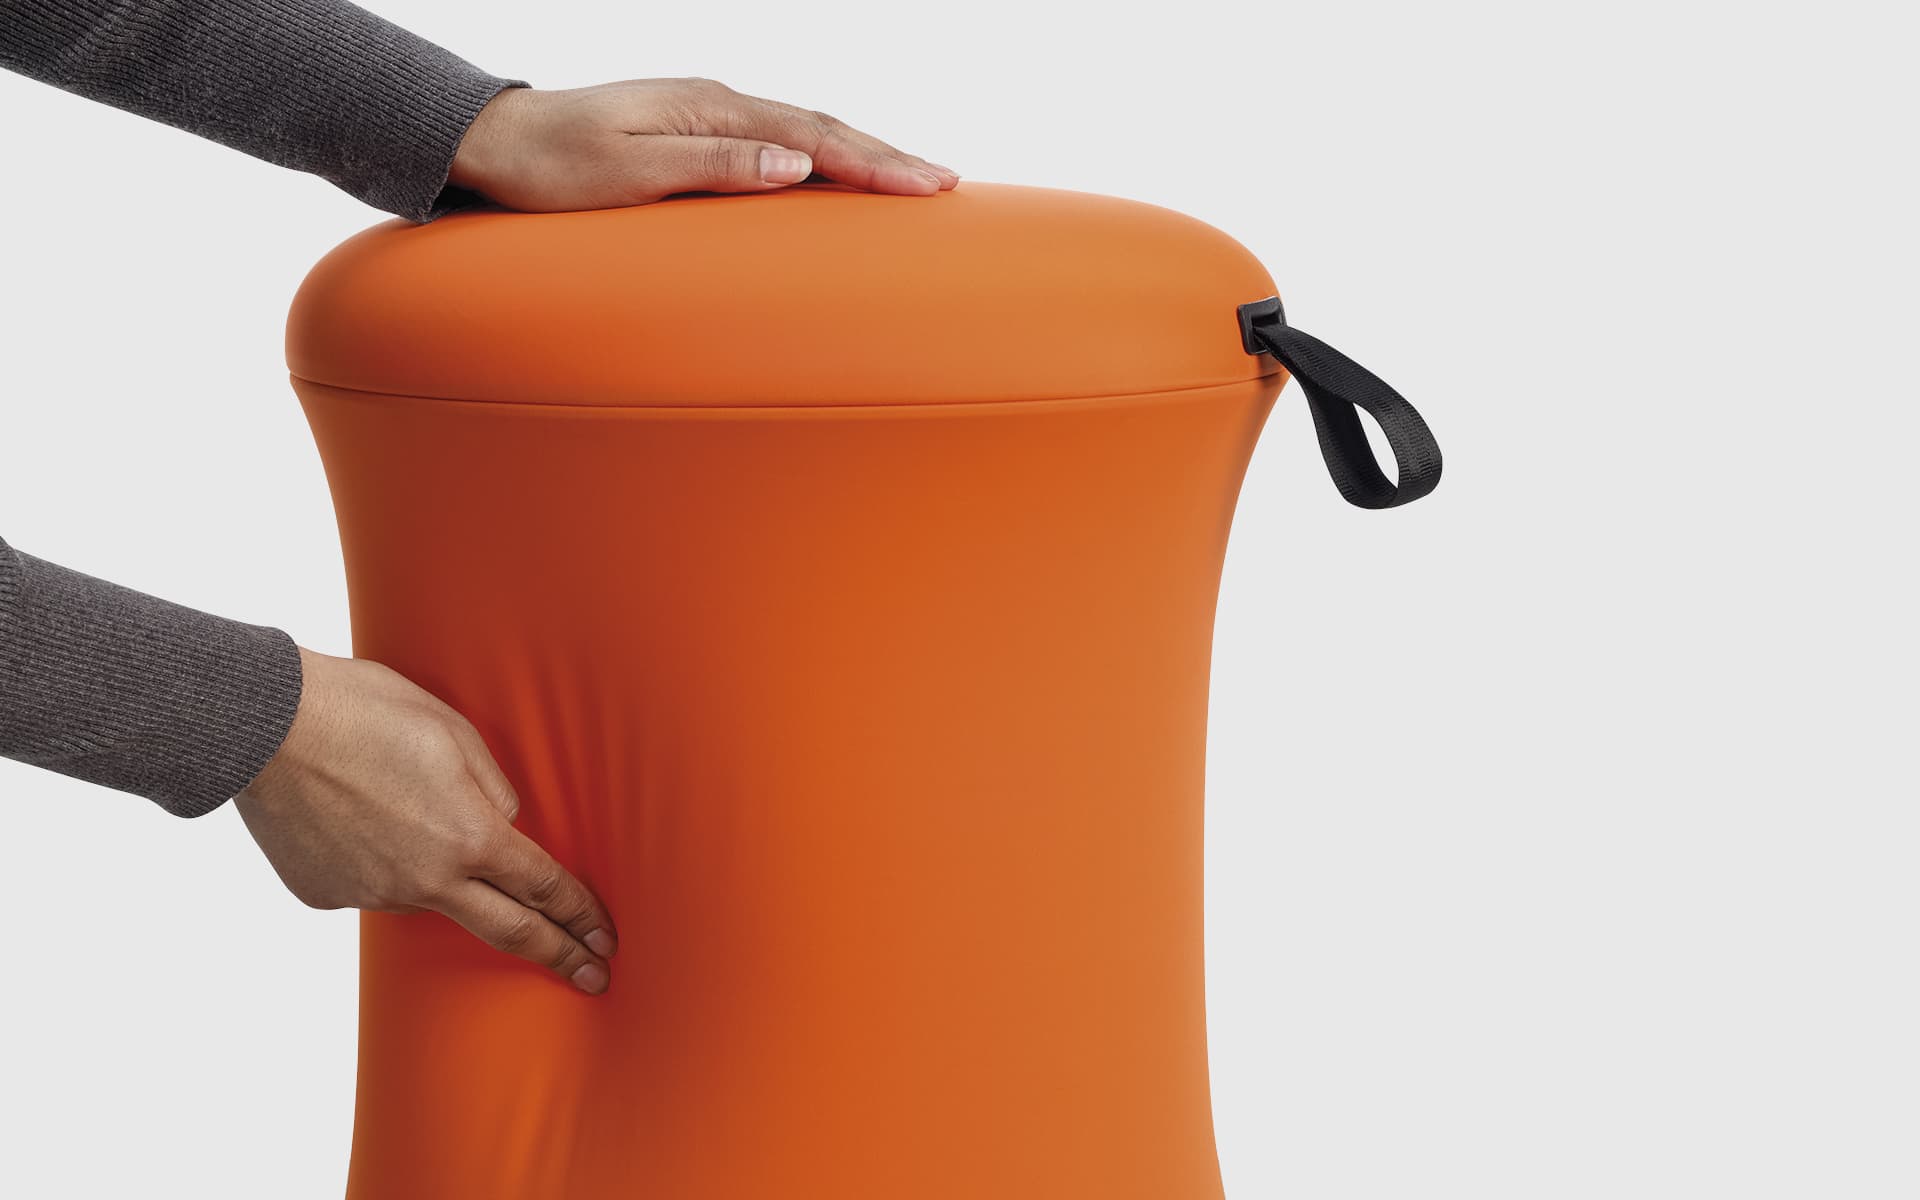 Nahaufnahme von Händen, die einen orangefarbenen Uebobo Hocker, entwickelt von ITO Design, berühren